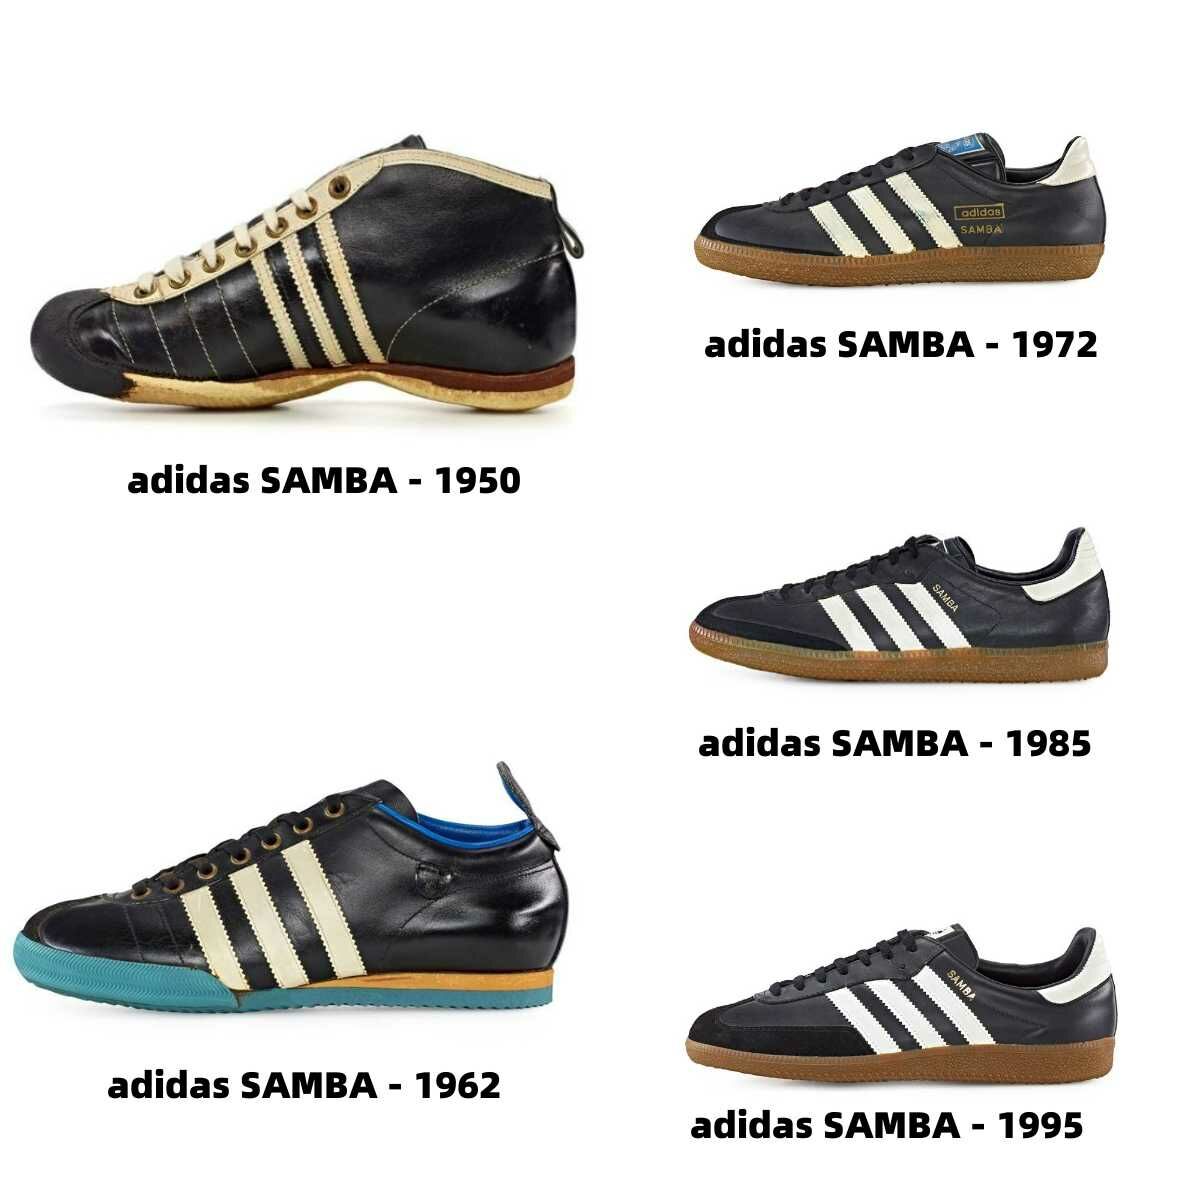 Samba是愛迪達第一雙球鞋